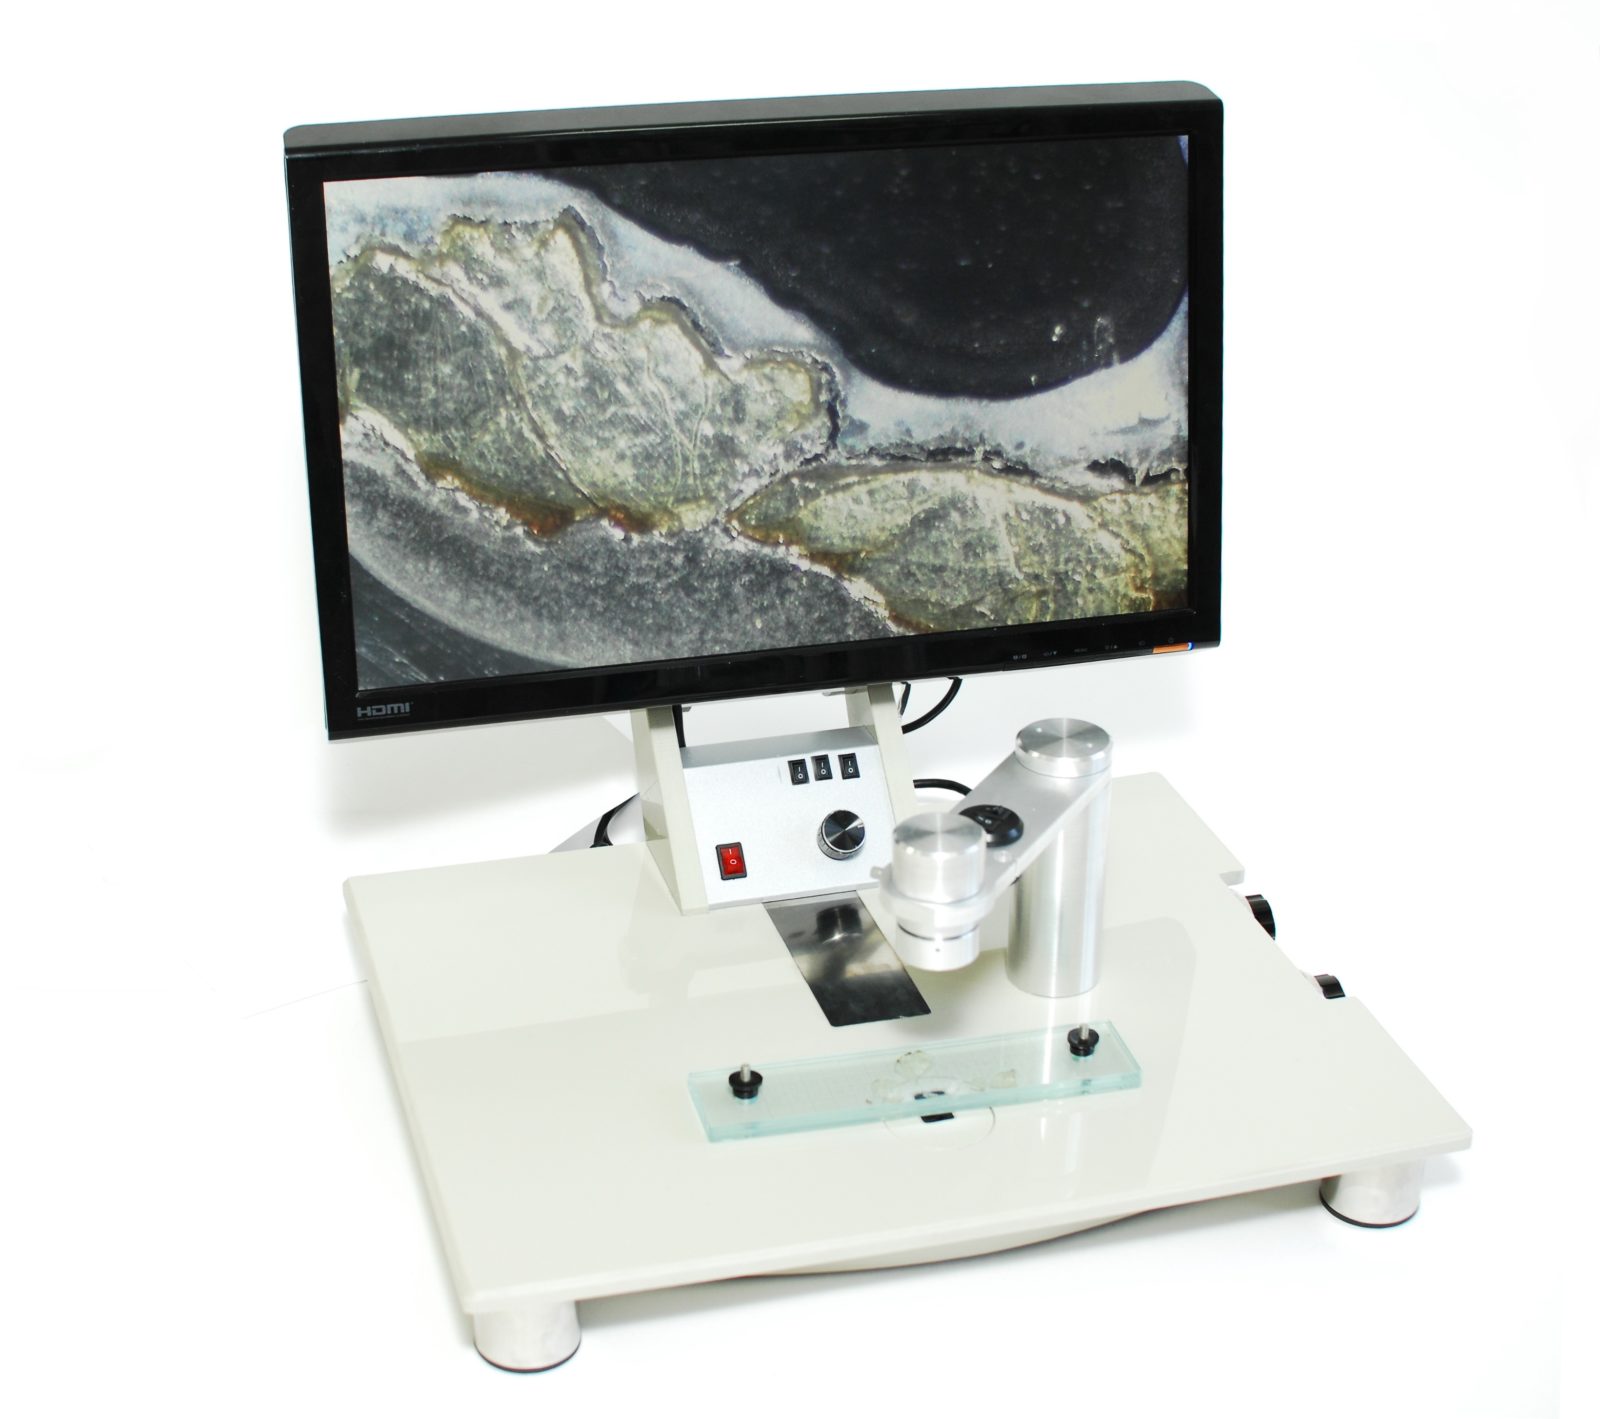 СТЕЙК-HD — Трихинеллоскоп с электронным выводом изображения высокого разрешения